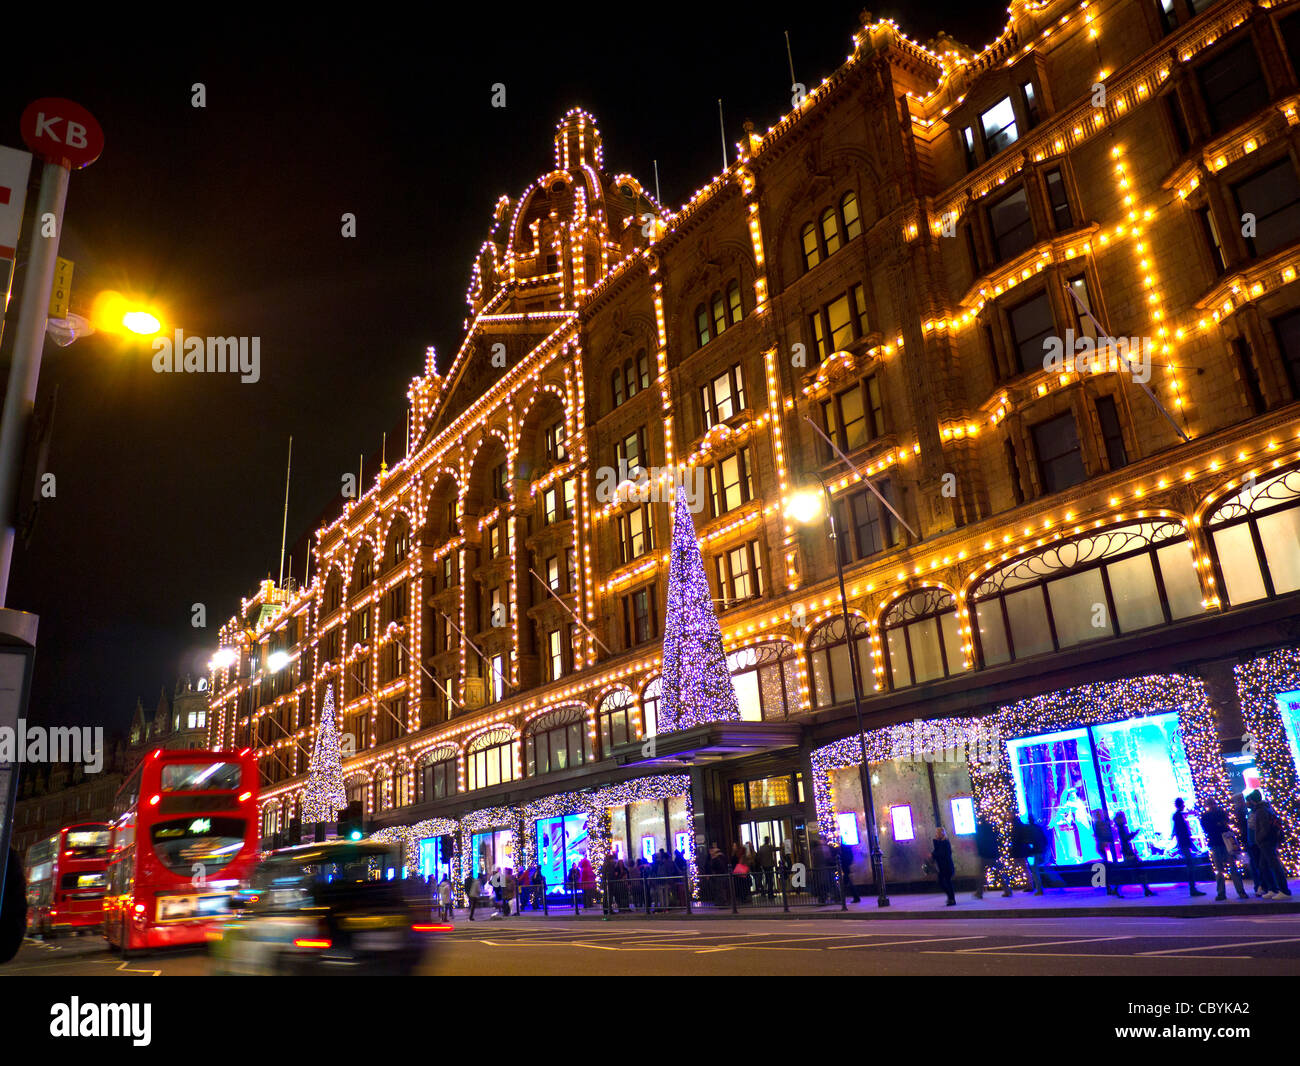 Weihnachten Einkaufen in London Harrods Kaufhaus in der Dämmerung mit Weihnachtsbeleuchtung Shopper und vorbeifahrenden Taxis und rote Busse Knightsbridge London SW1 Stockfoto